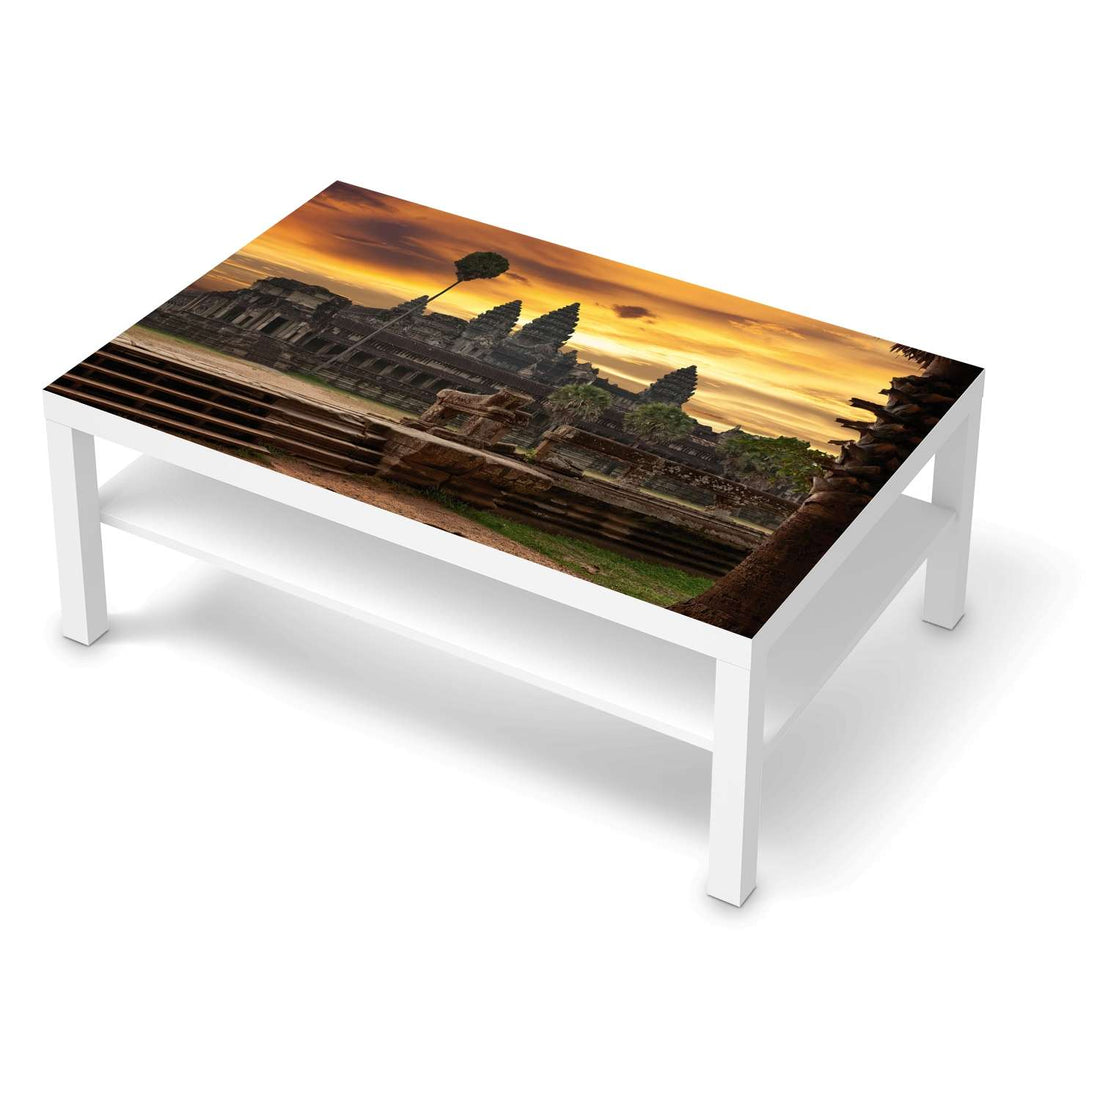 Klebefolie Angkor Wat - IKEA Lack Tisch 118x78 cm - weiss